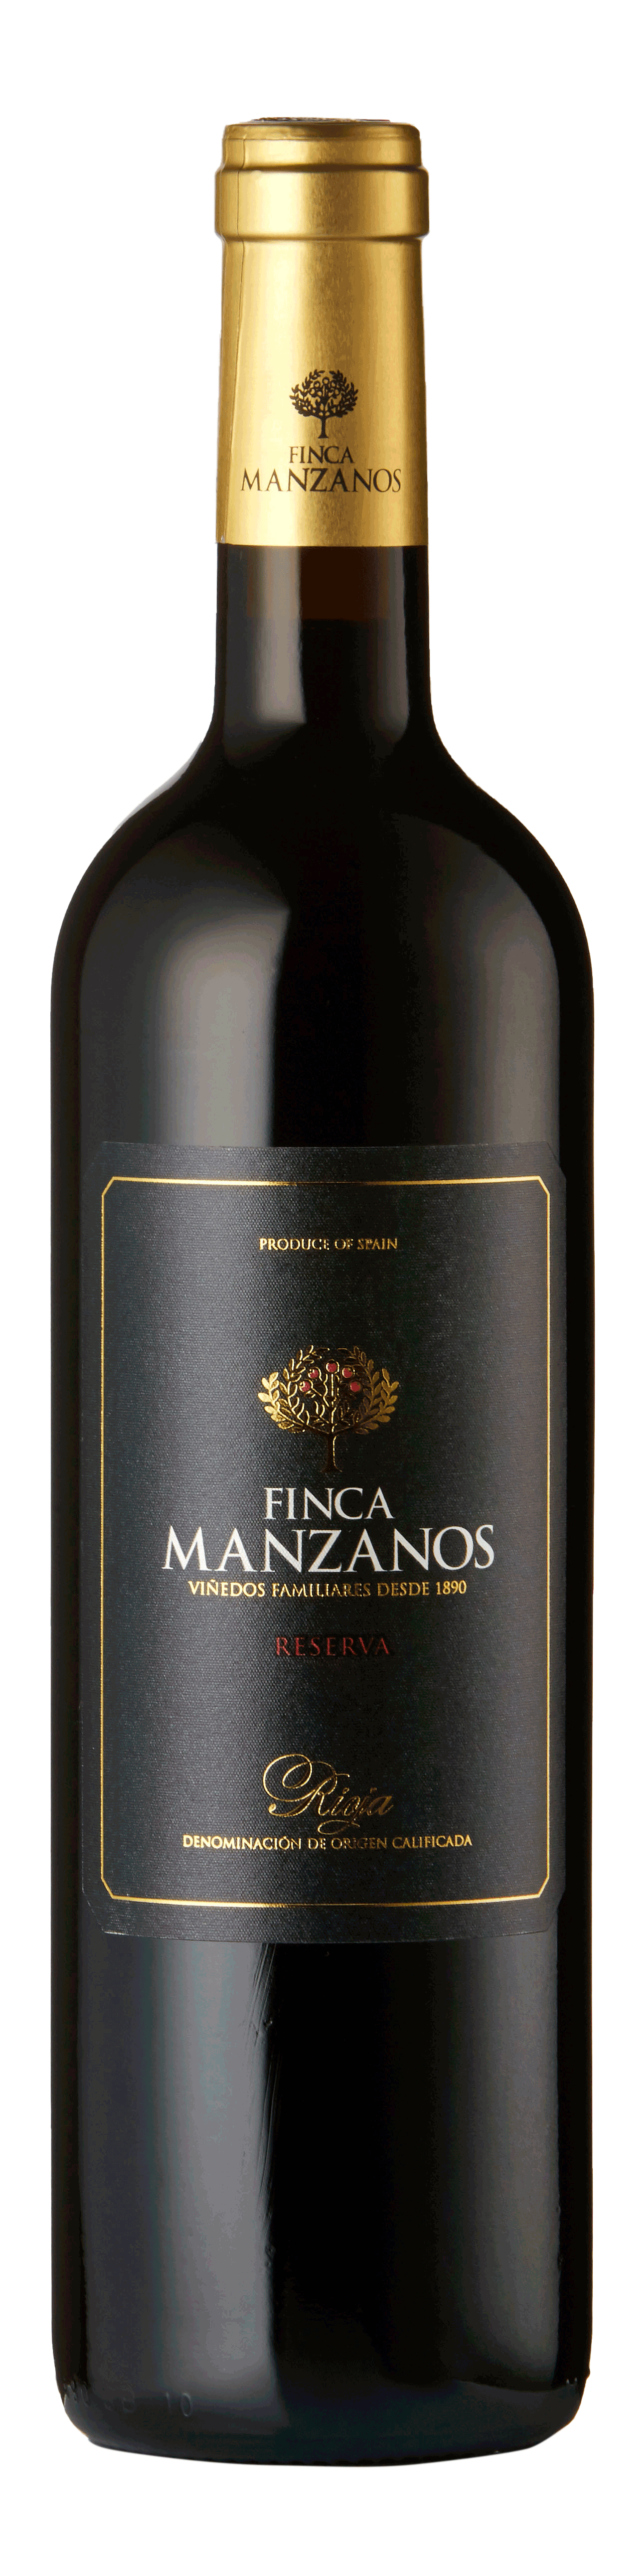 Bottle shot - Bodegas Manzanos, Finca Manzanos Reserva, DOCa Rioja, Spain